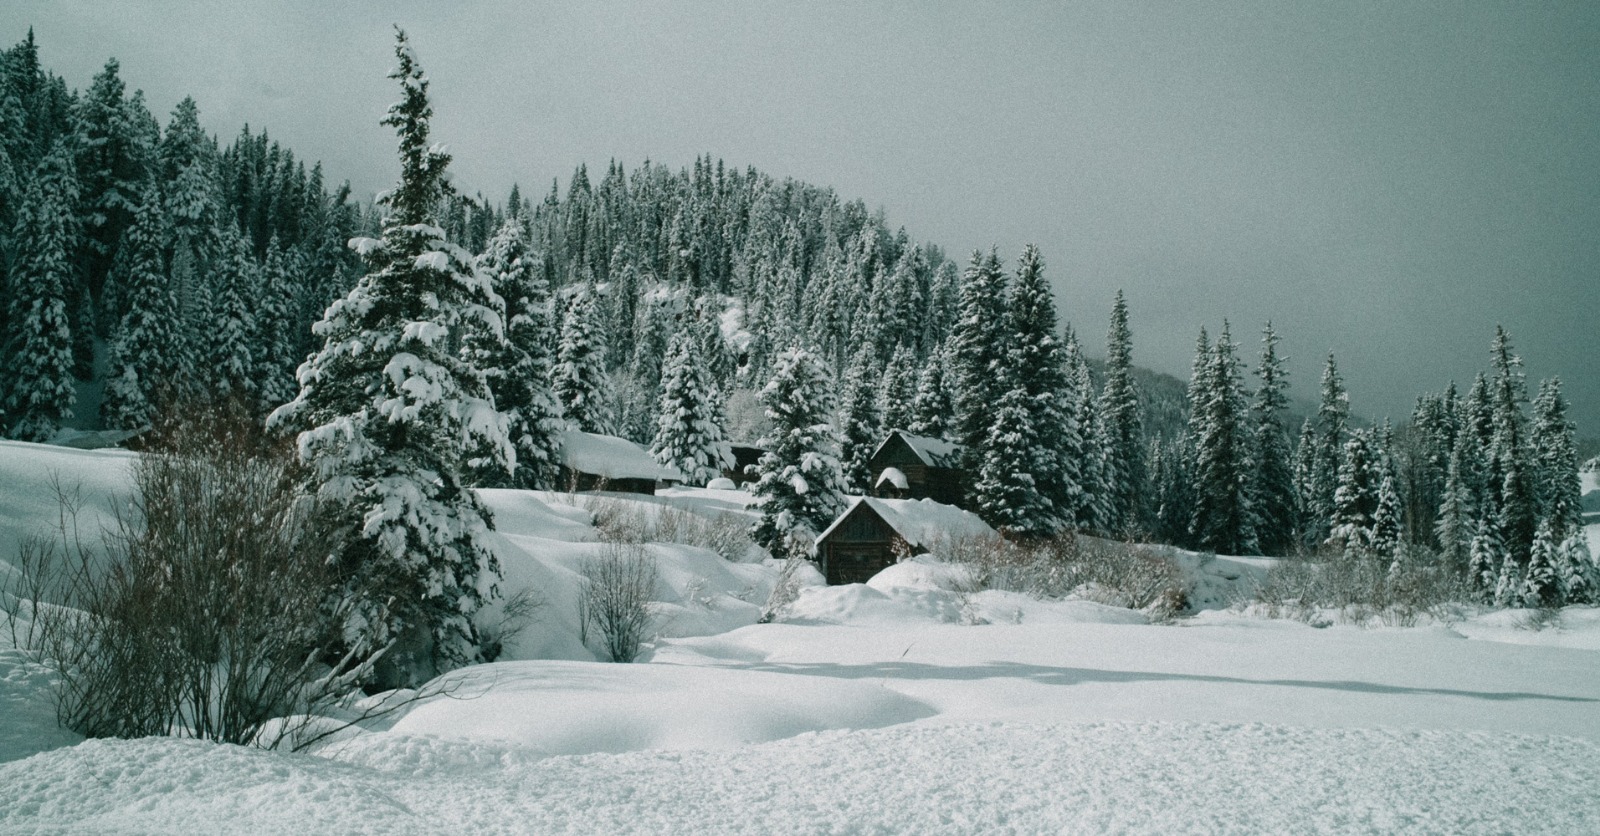 Dunton Colorado winter vacations in the US